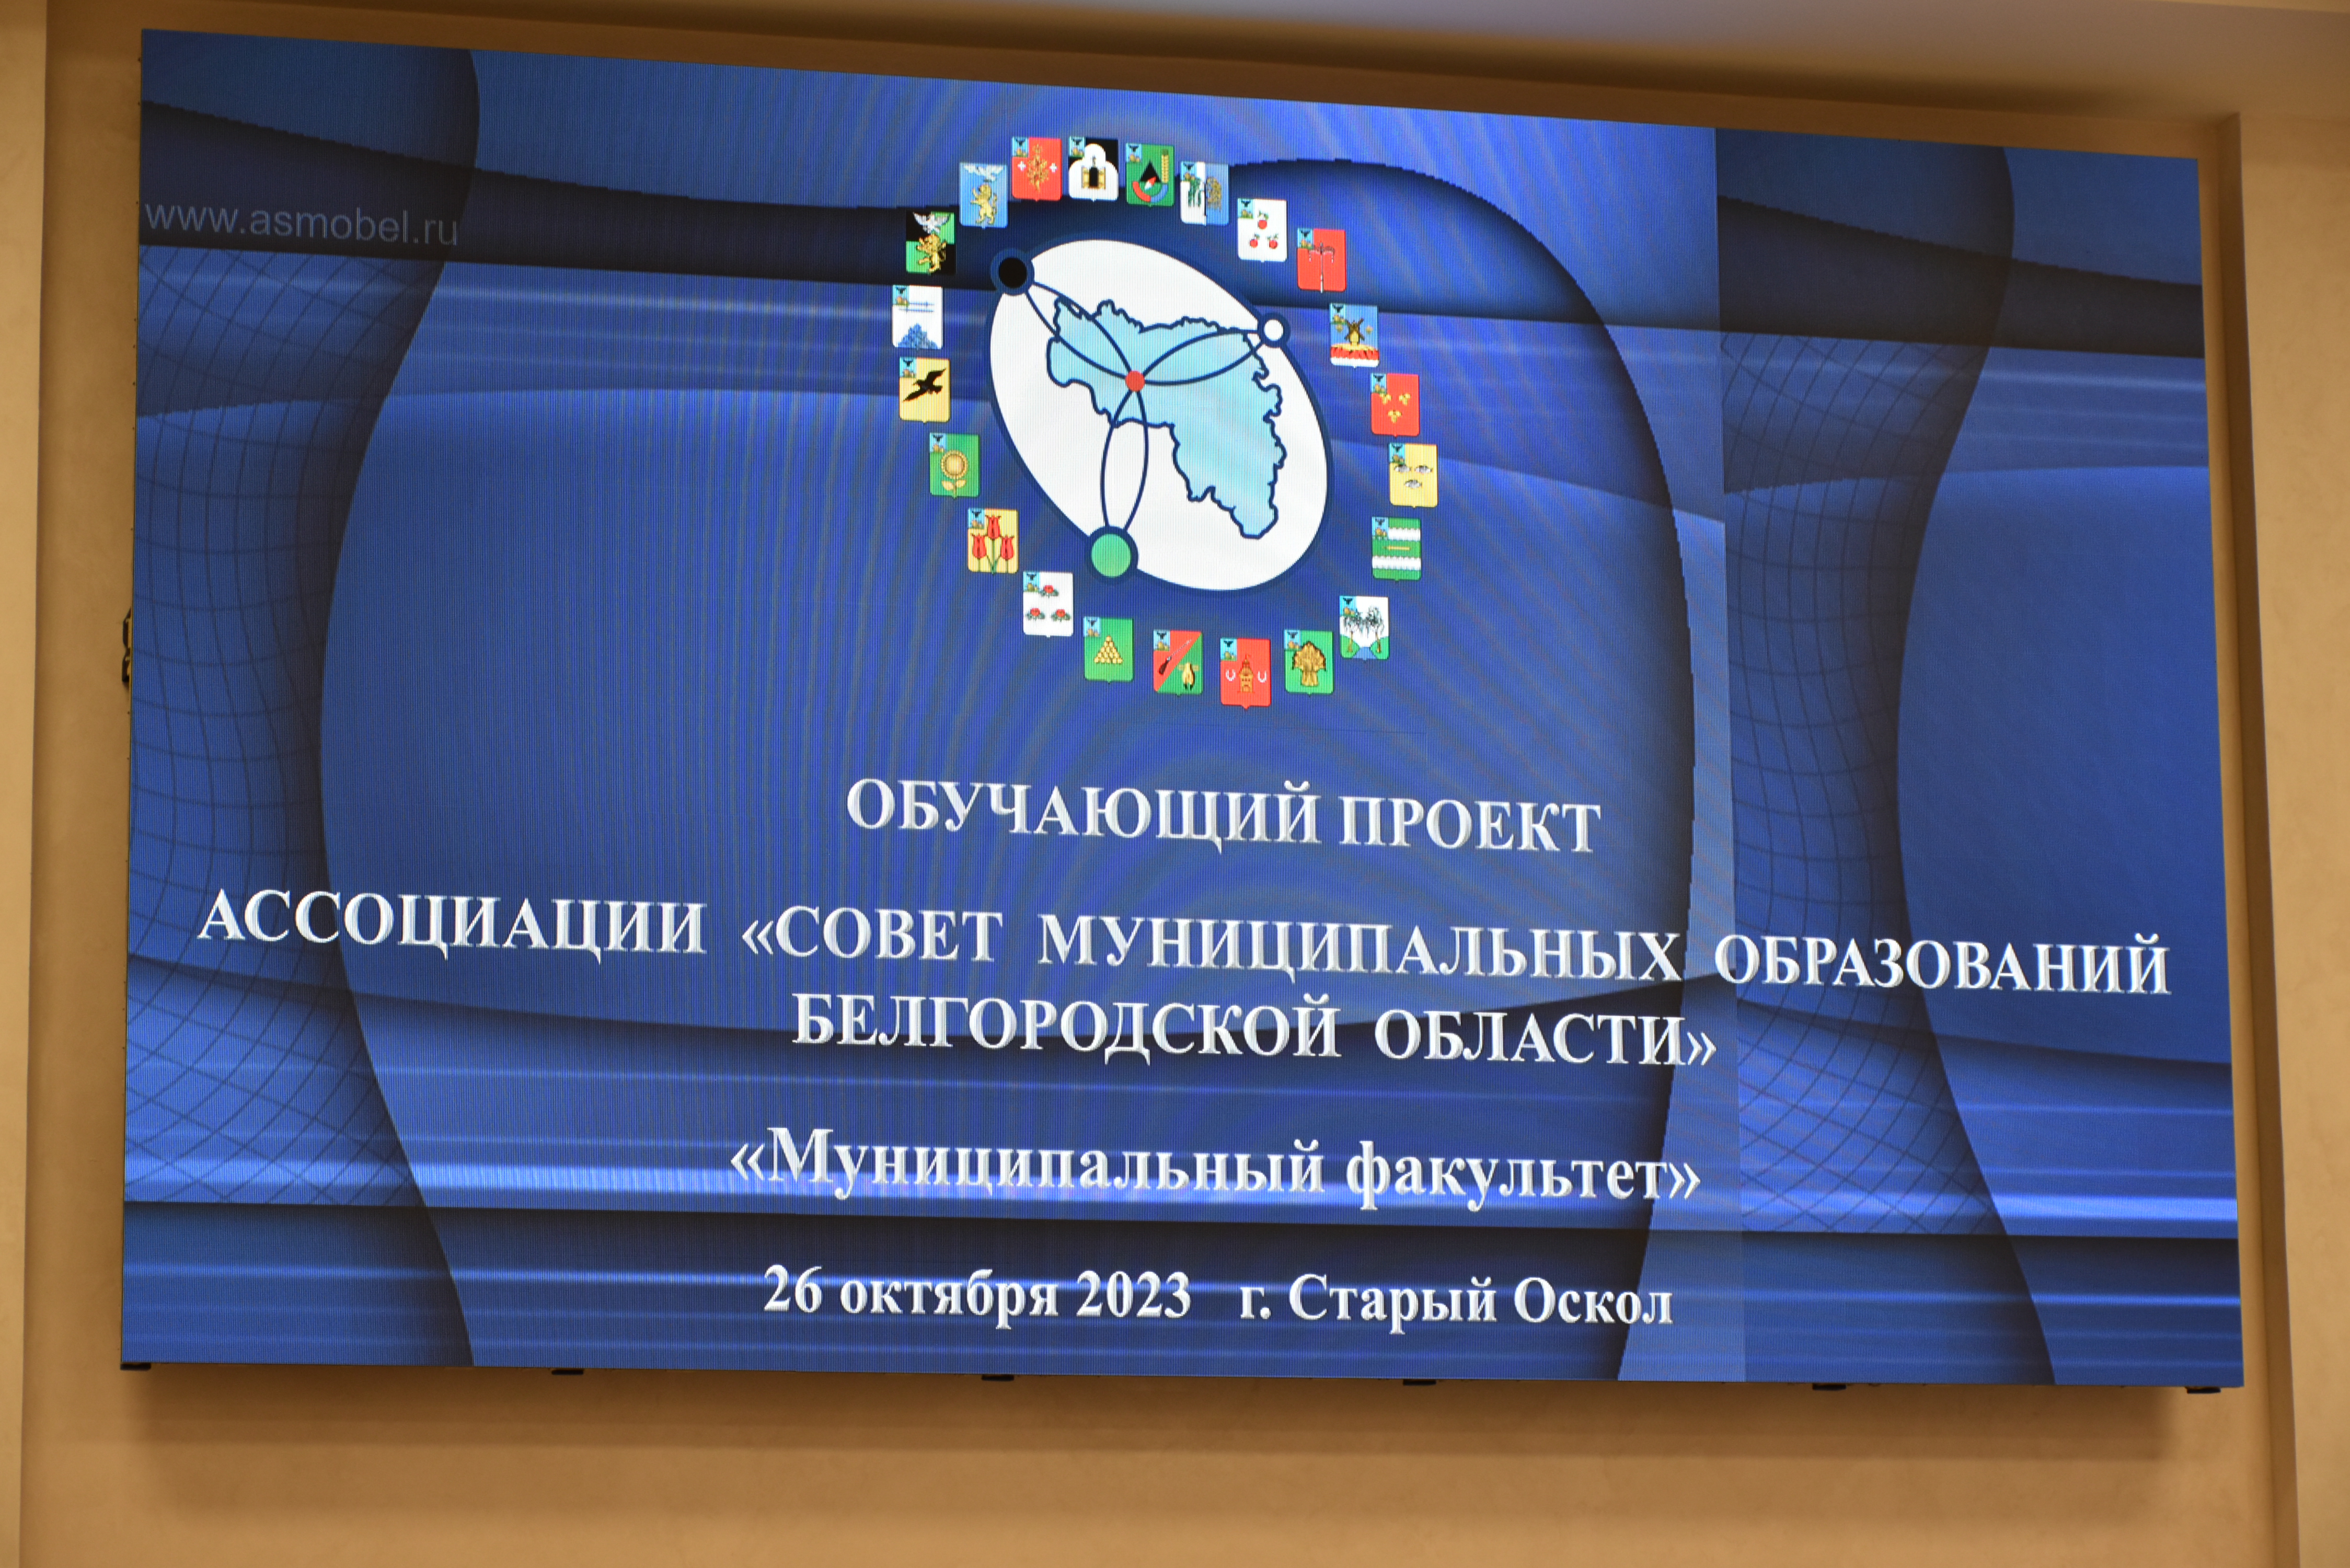 Совет депутатов Старооскольского городского округа принял участие в проекте Ассоциации «Муниципальный факультет».